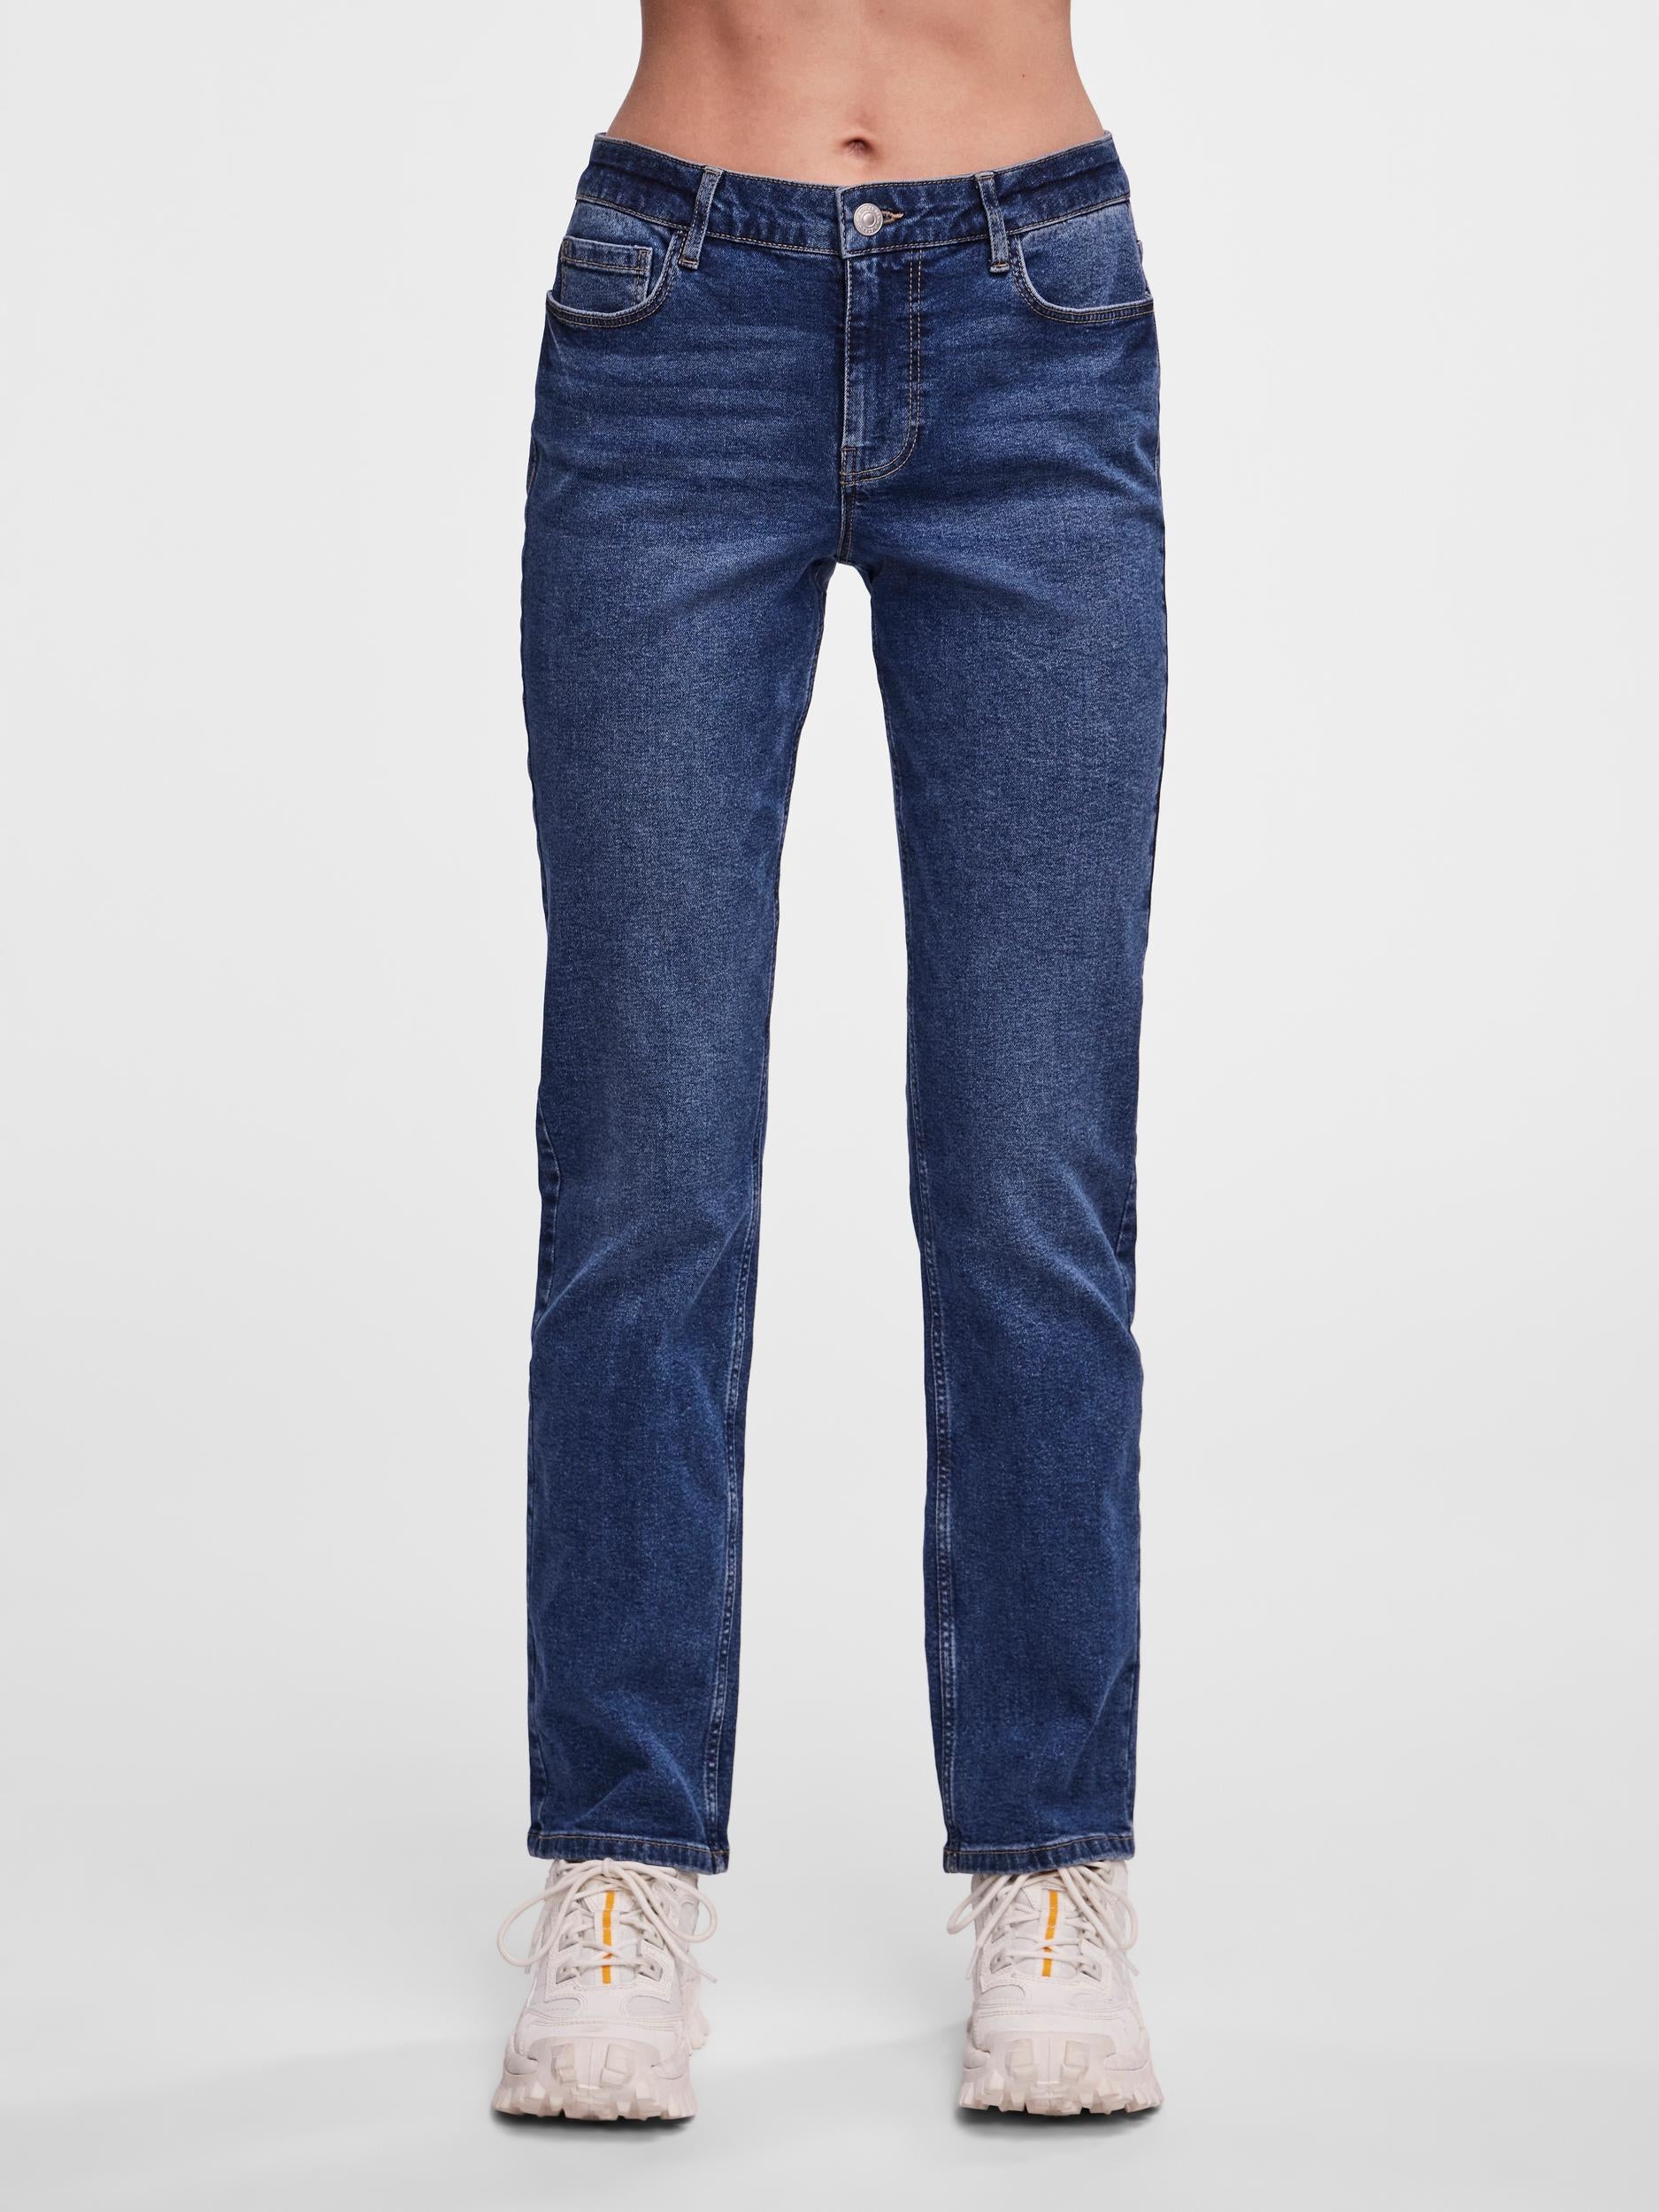 Pieces jeans diritti lavaggio blu chiaro